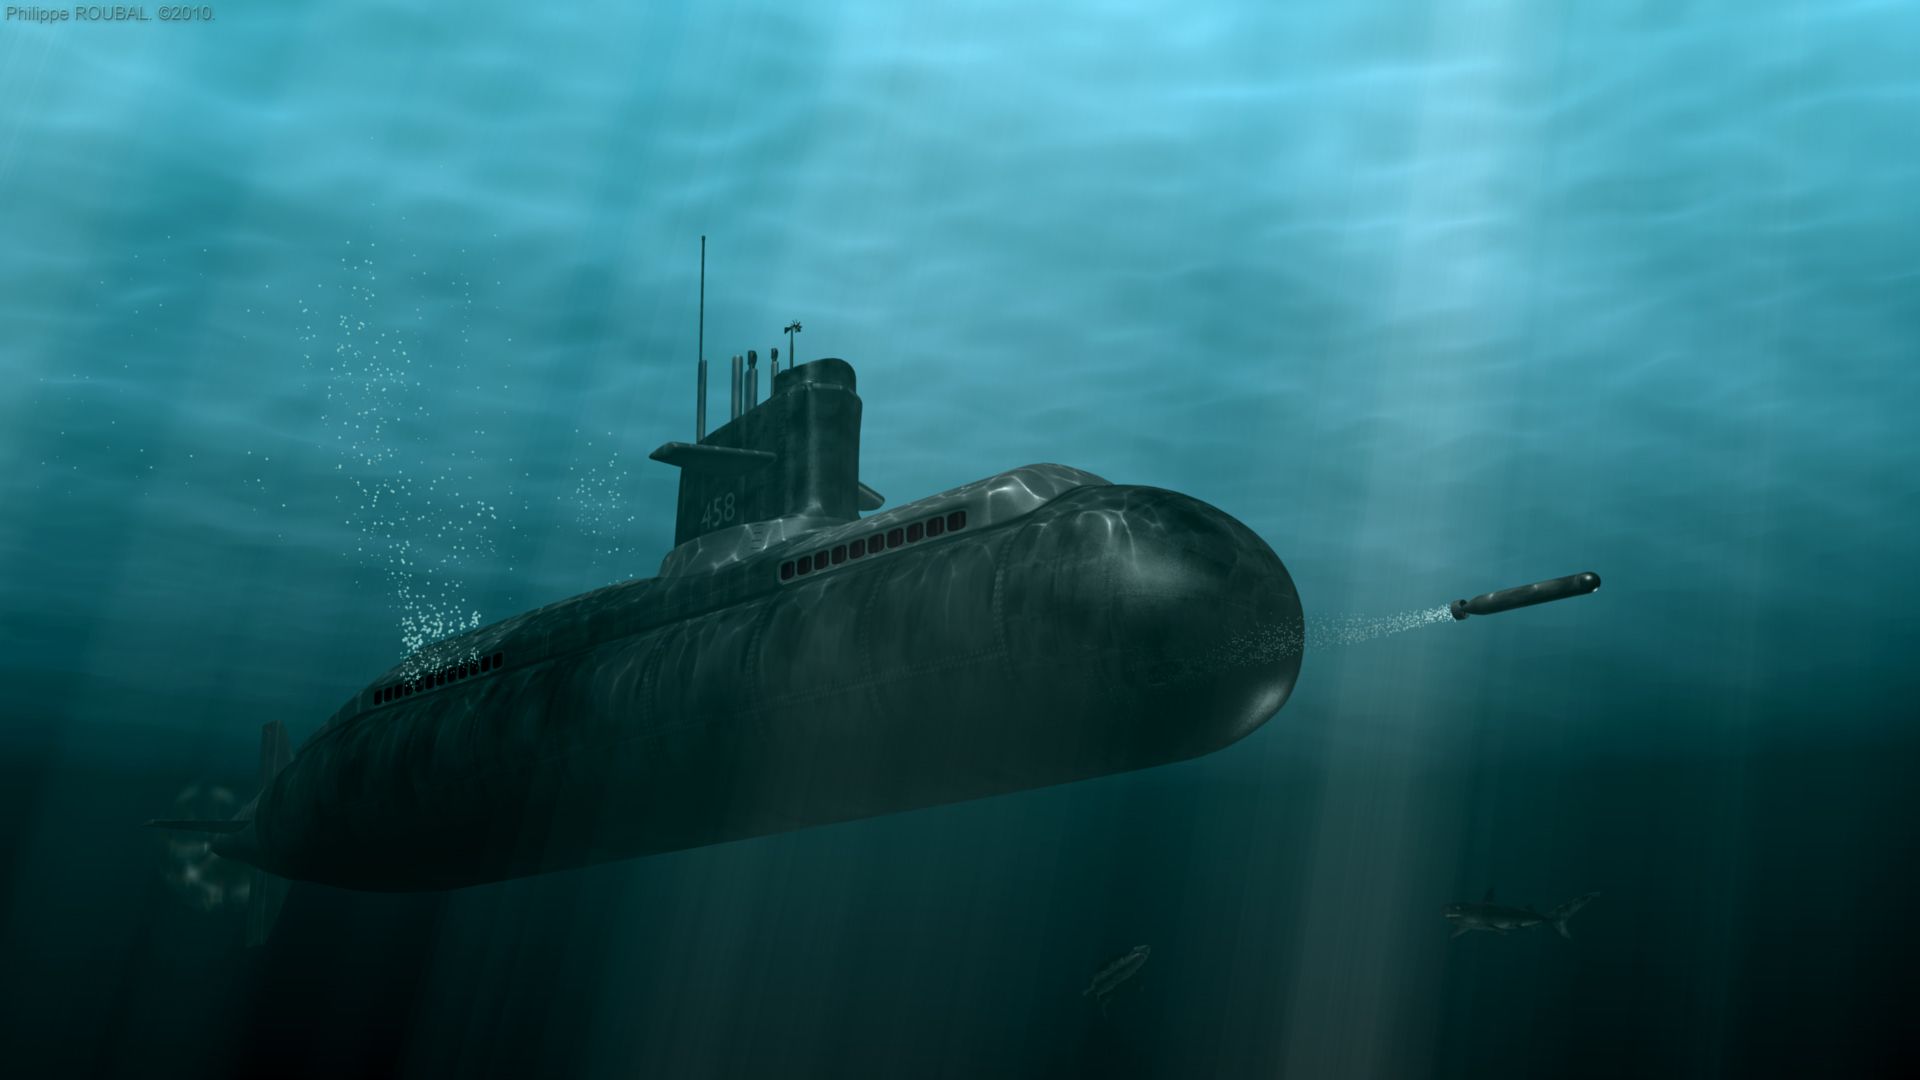  تصویر جالب و دیدنی از زیردریایی خفن و بزرگ 